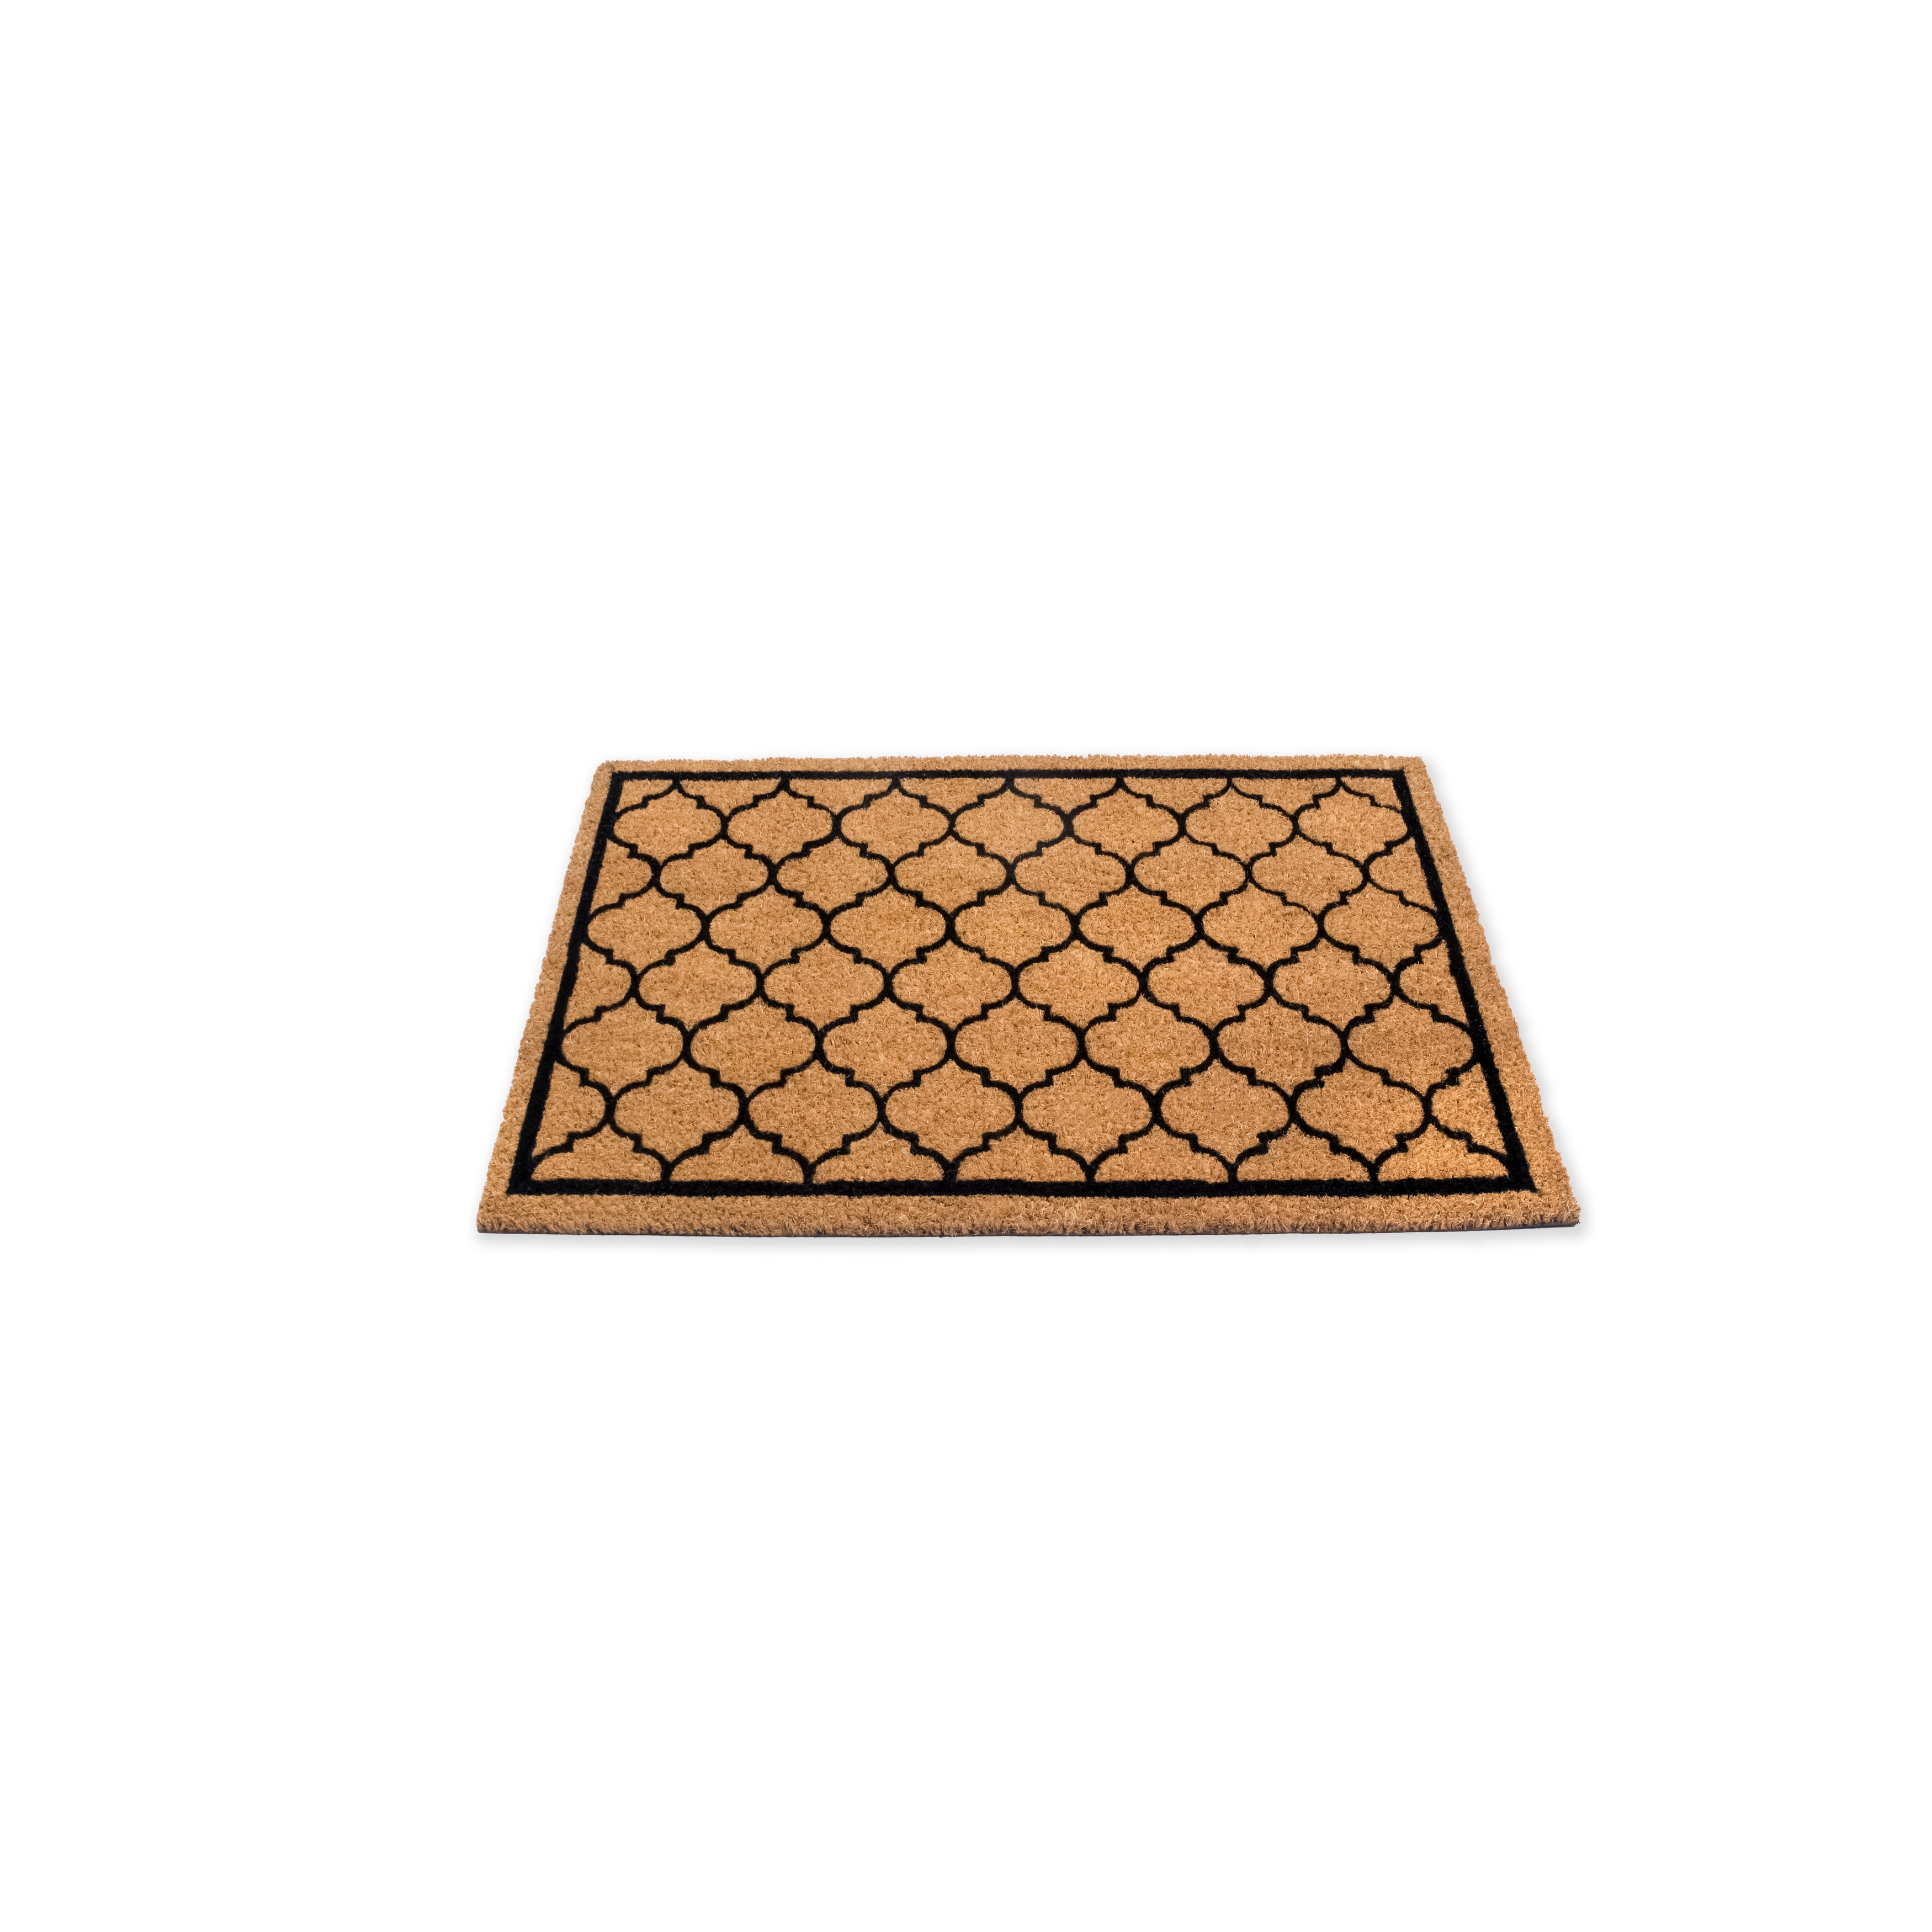 Mascot Hardware Moroccan Design Indoor Outdoor Coir Doormat - Beige